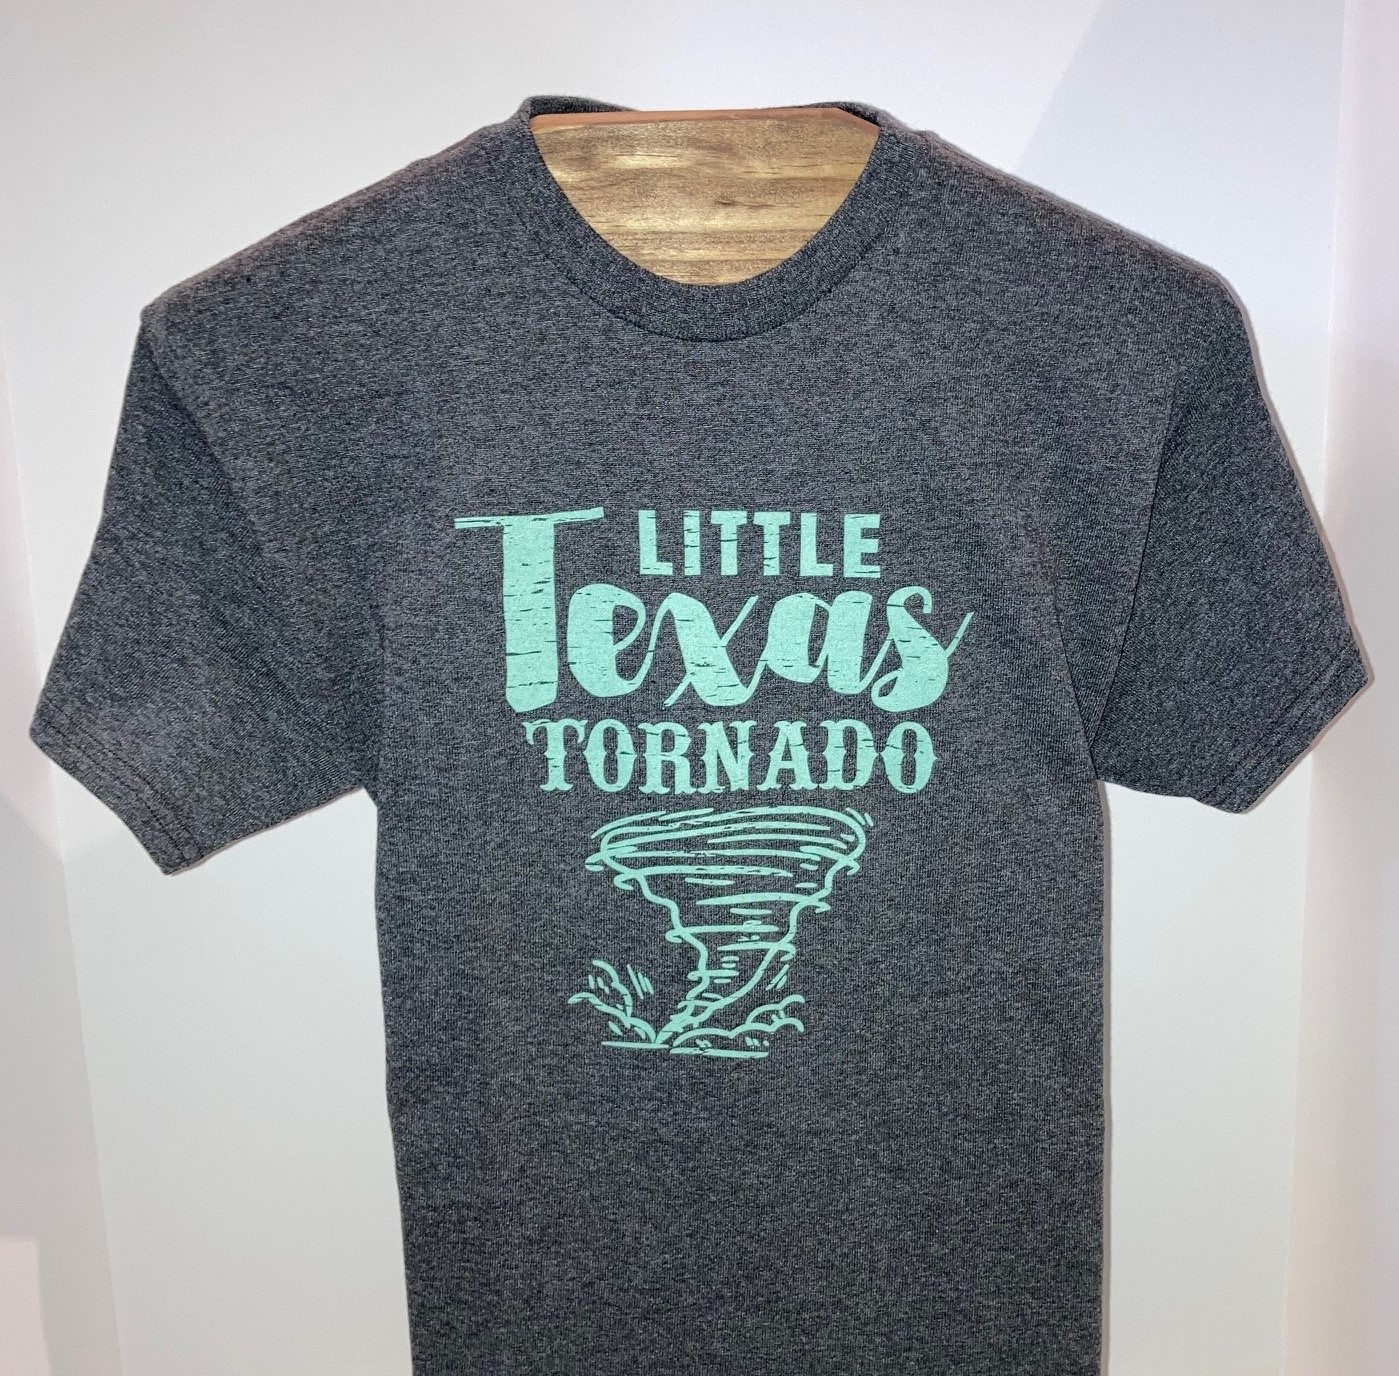 Little Texas Tornado T-Shirt | Trading